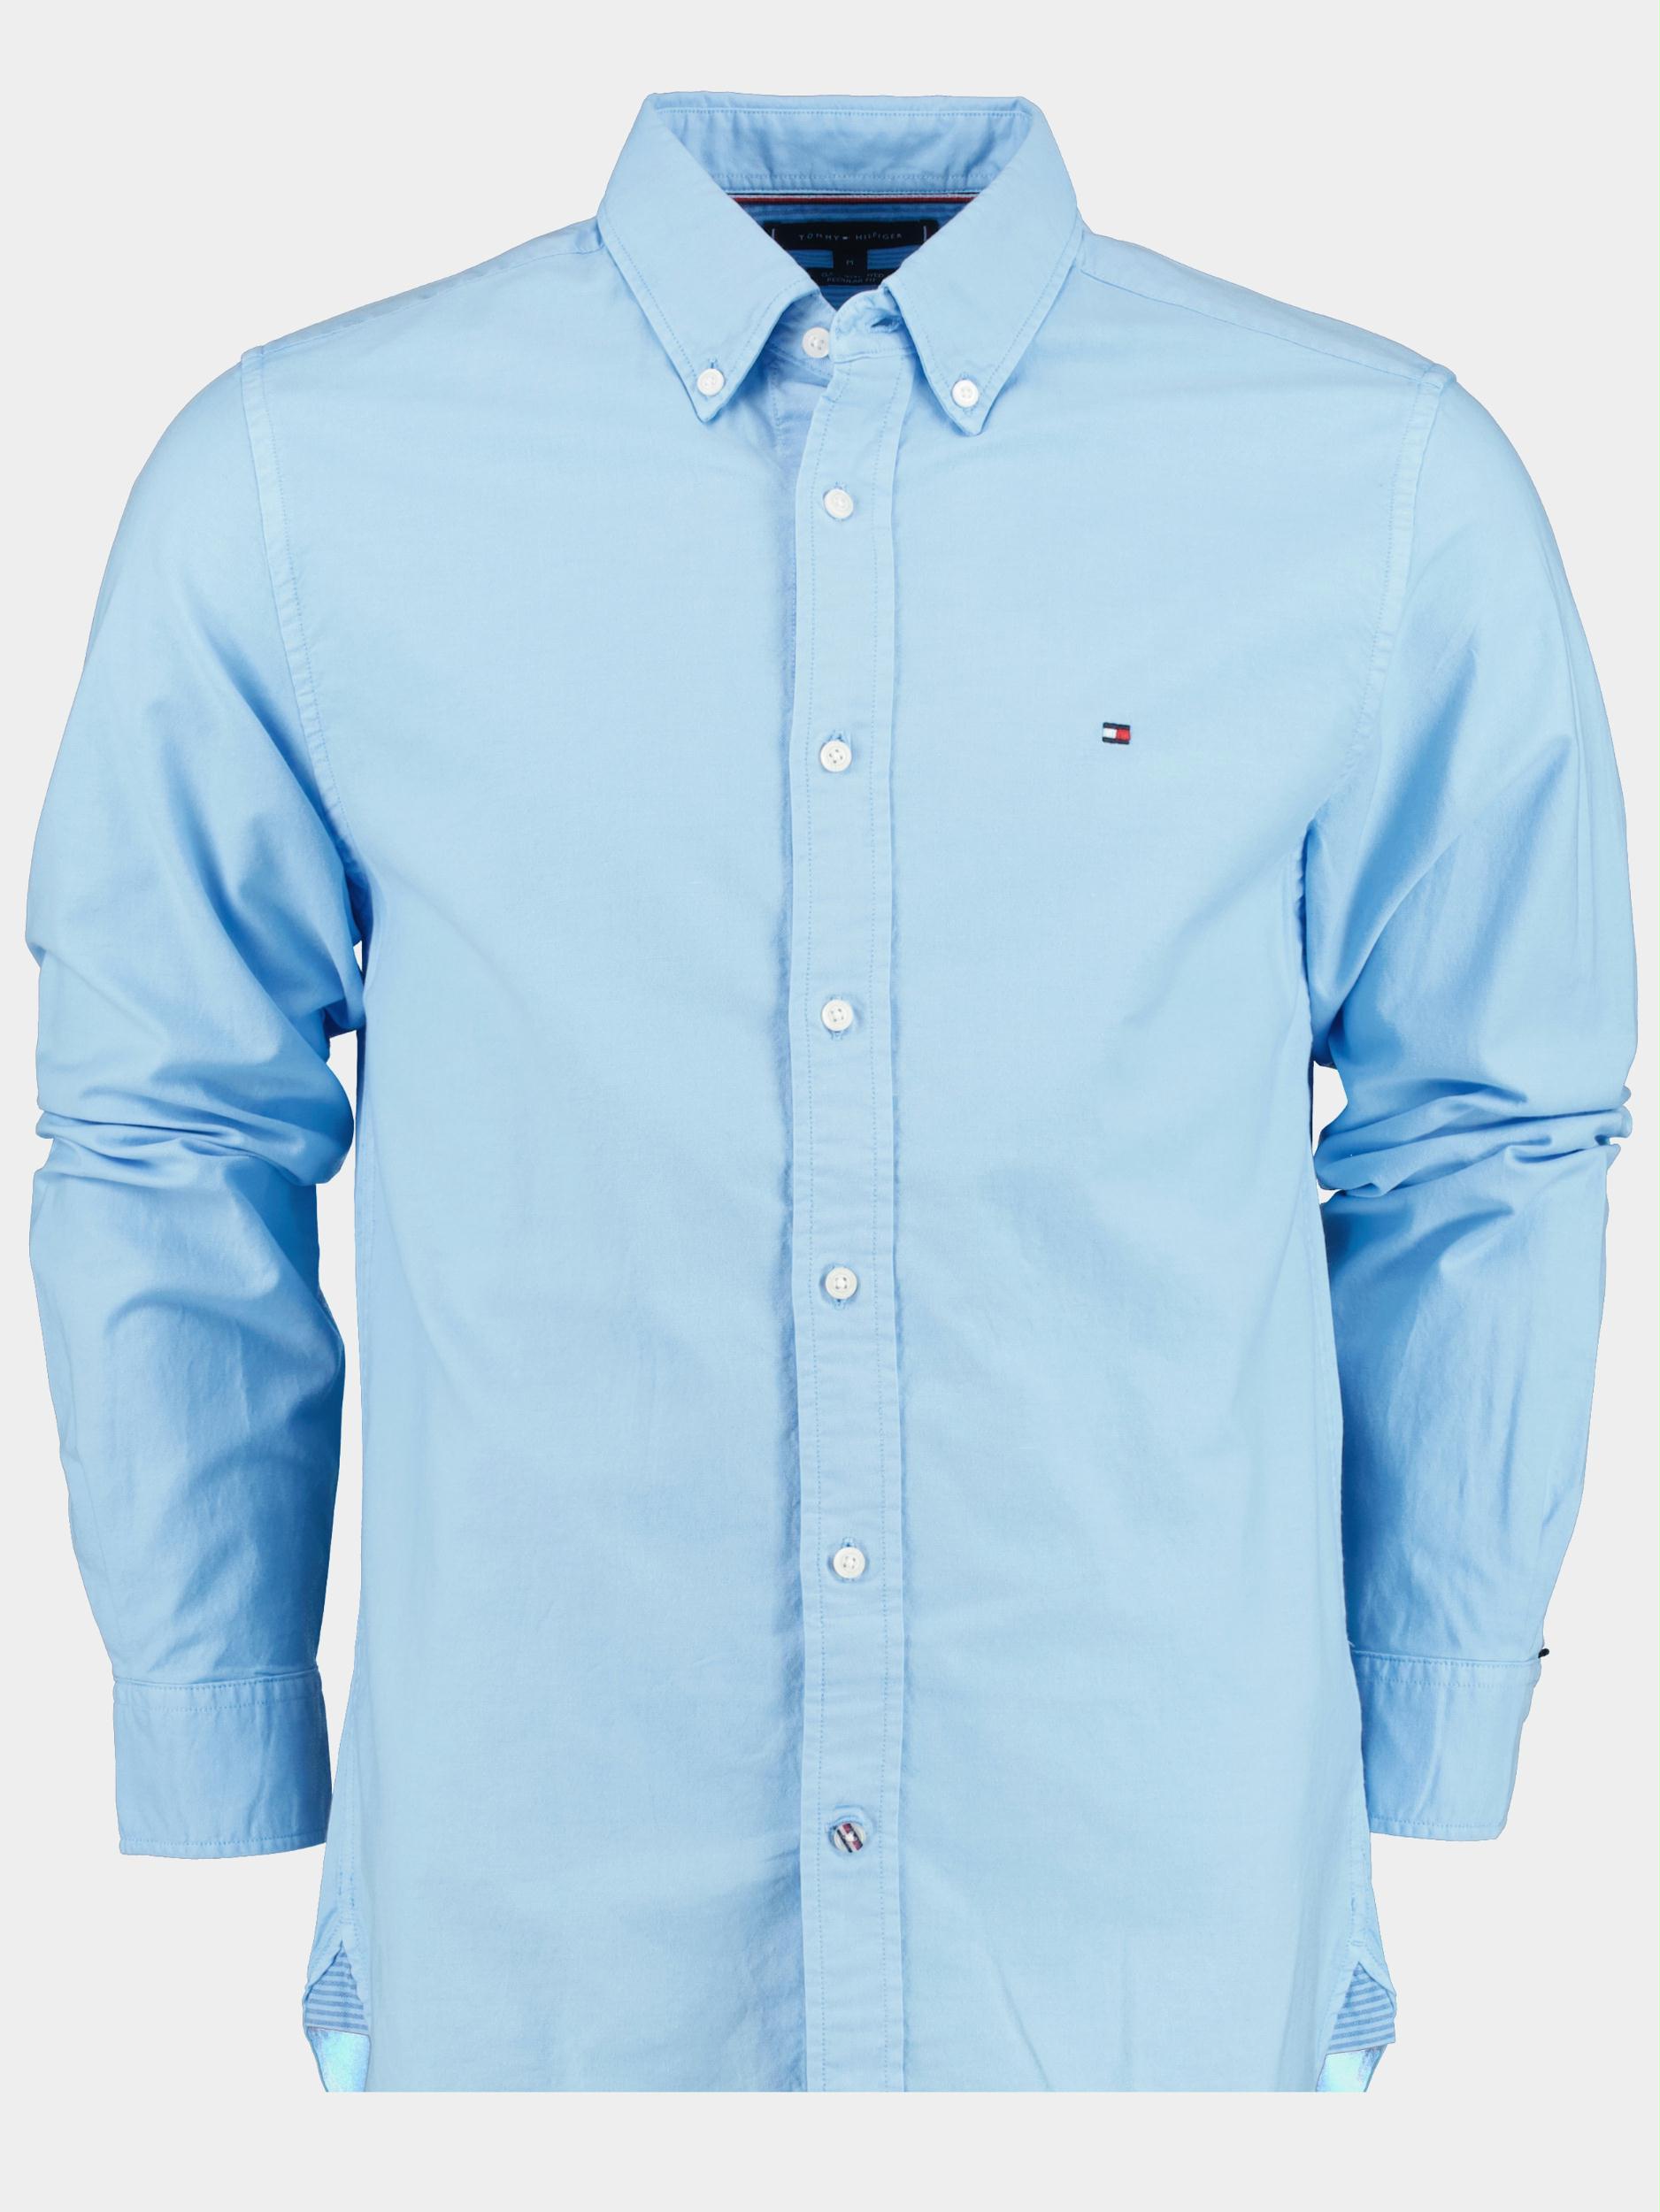 Tommy Hilfiger Casual hemd lange mouw Blauw Pigment garment dye MW0MW30677 C1Z